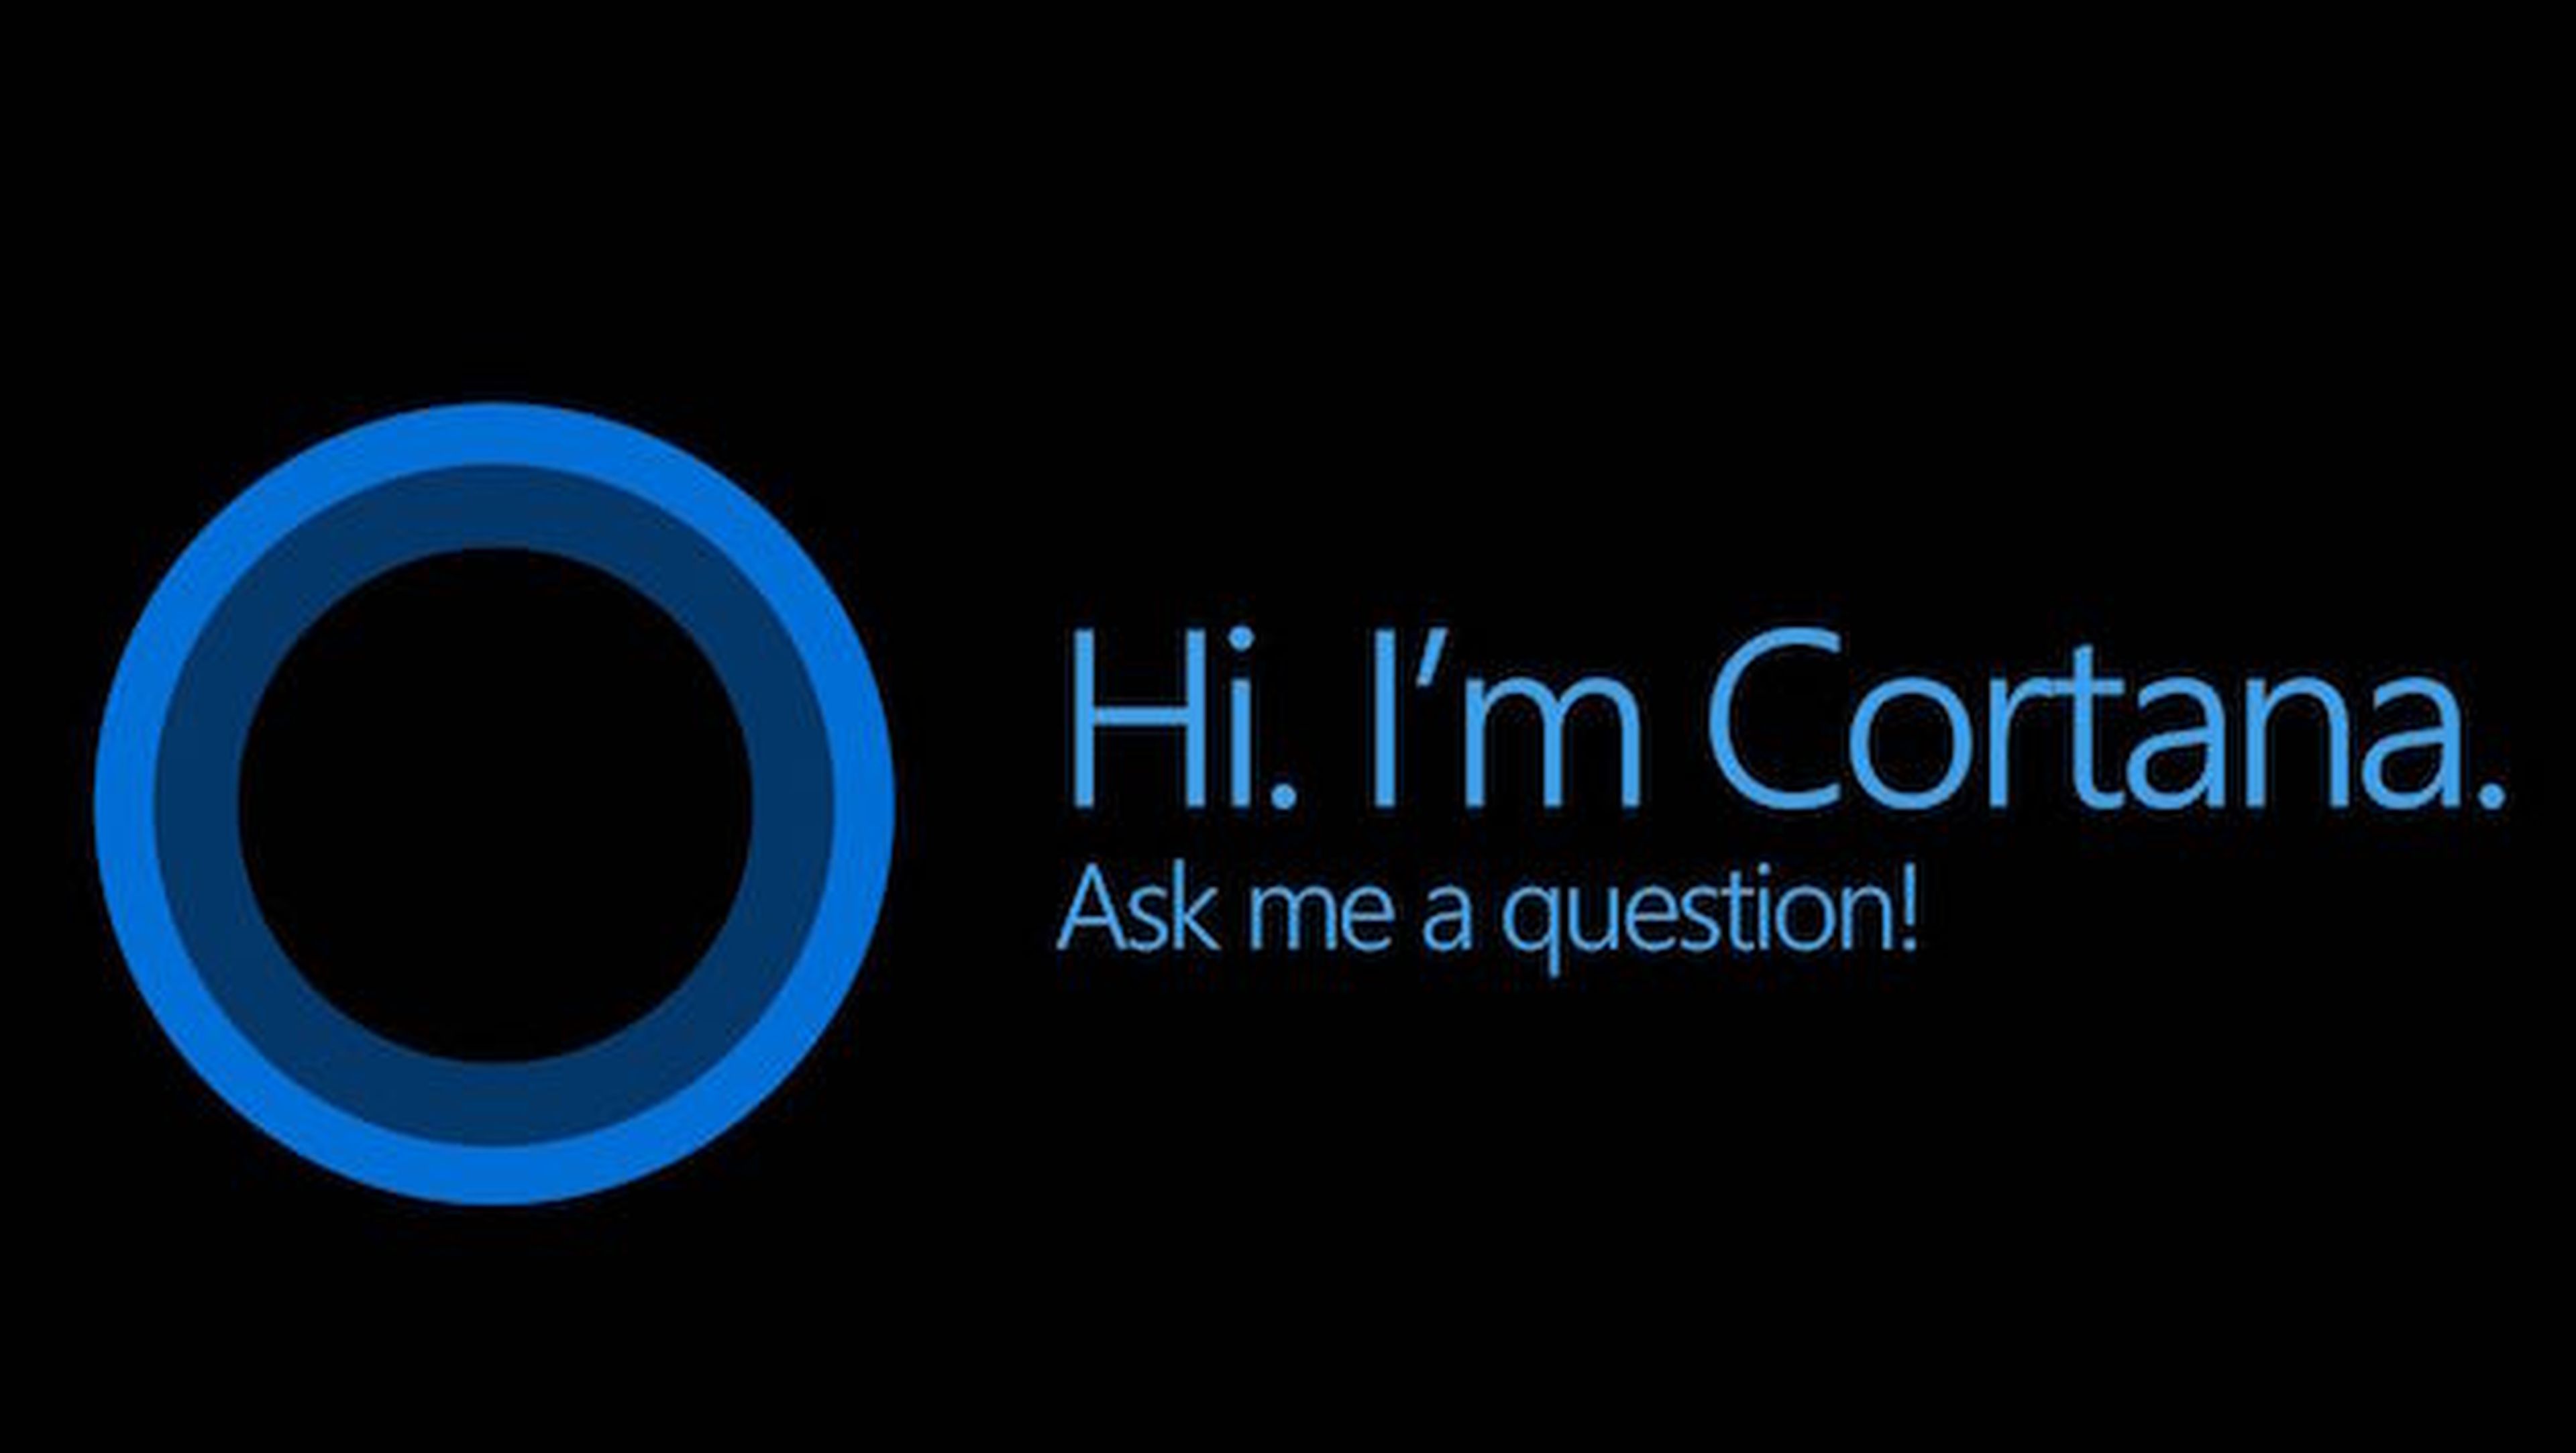 Cortana llega a iOS al fin, aunque limitada y beta privada